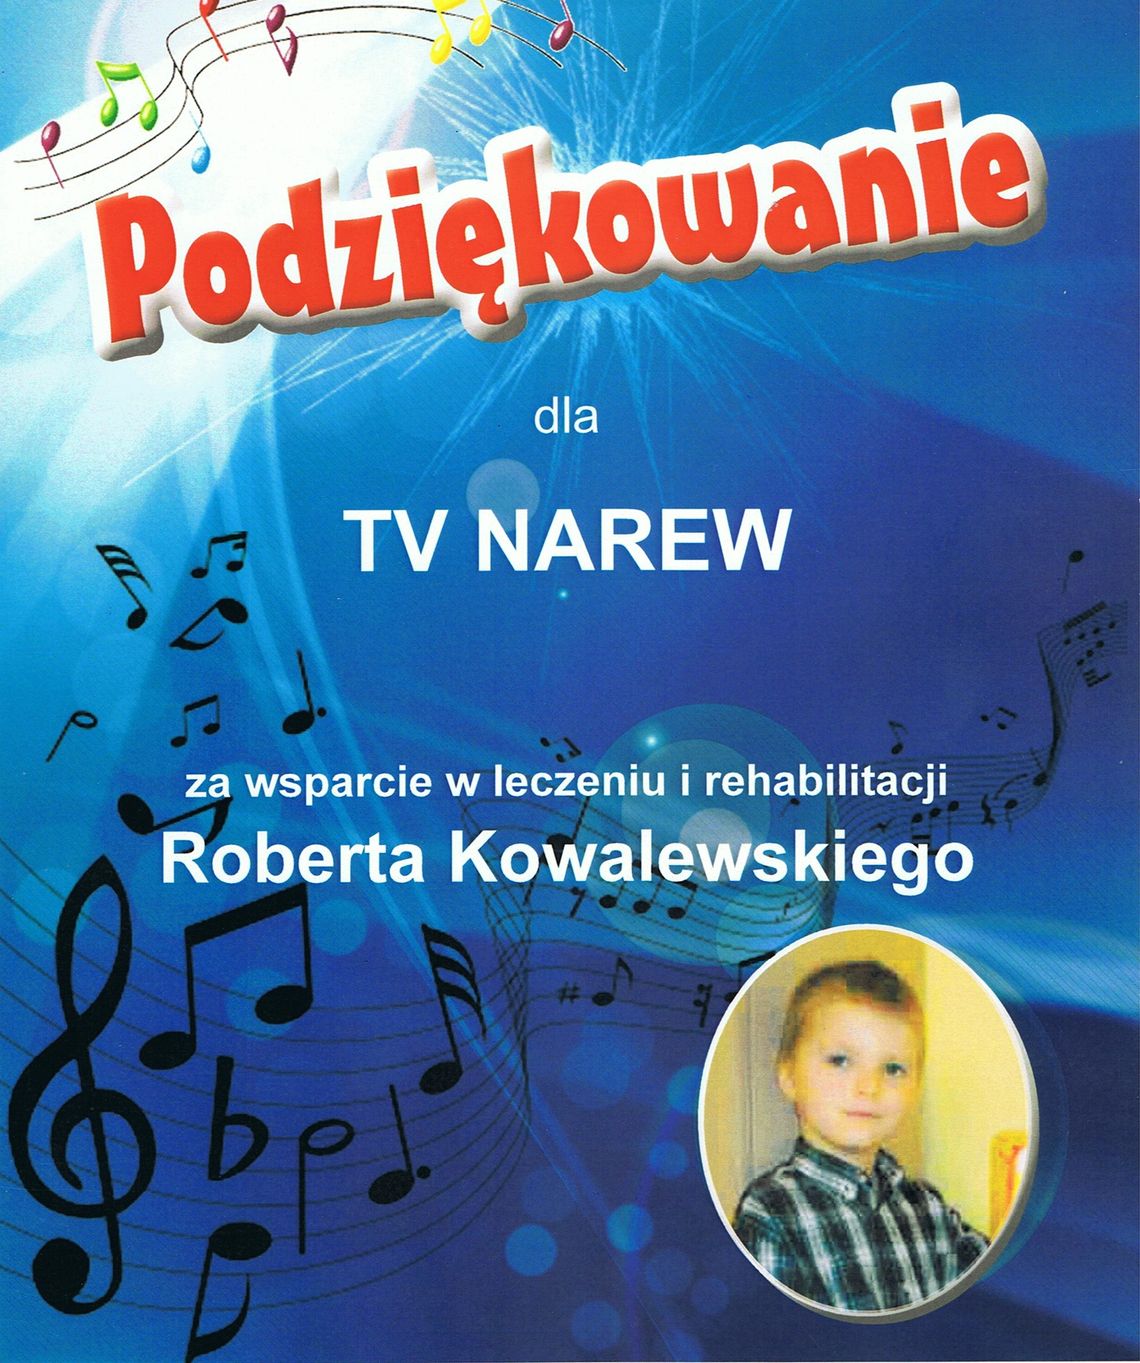 Robert Kowalewski w kręgu dobrych serc